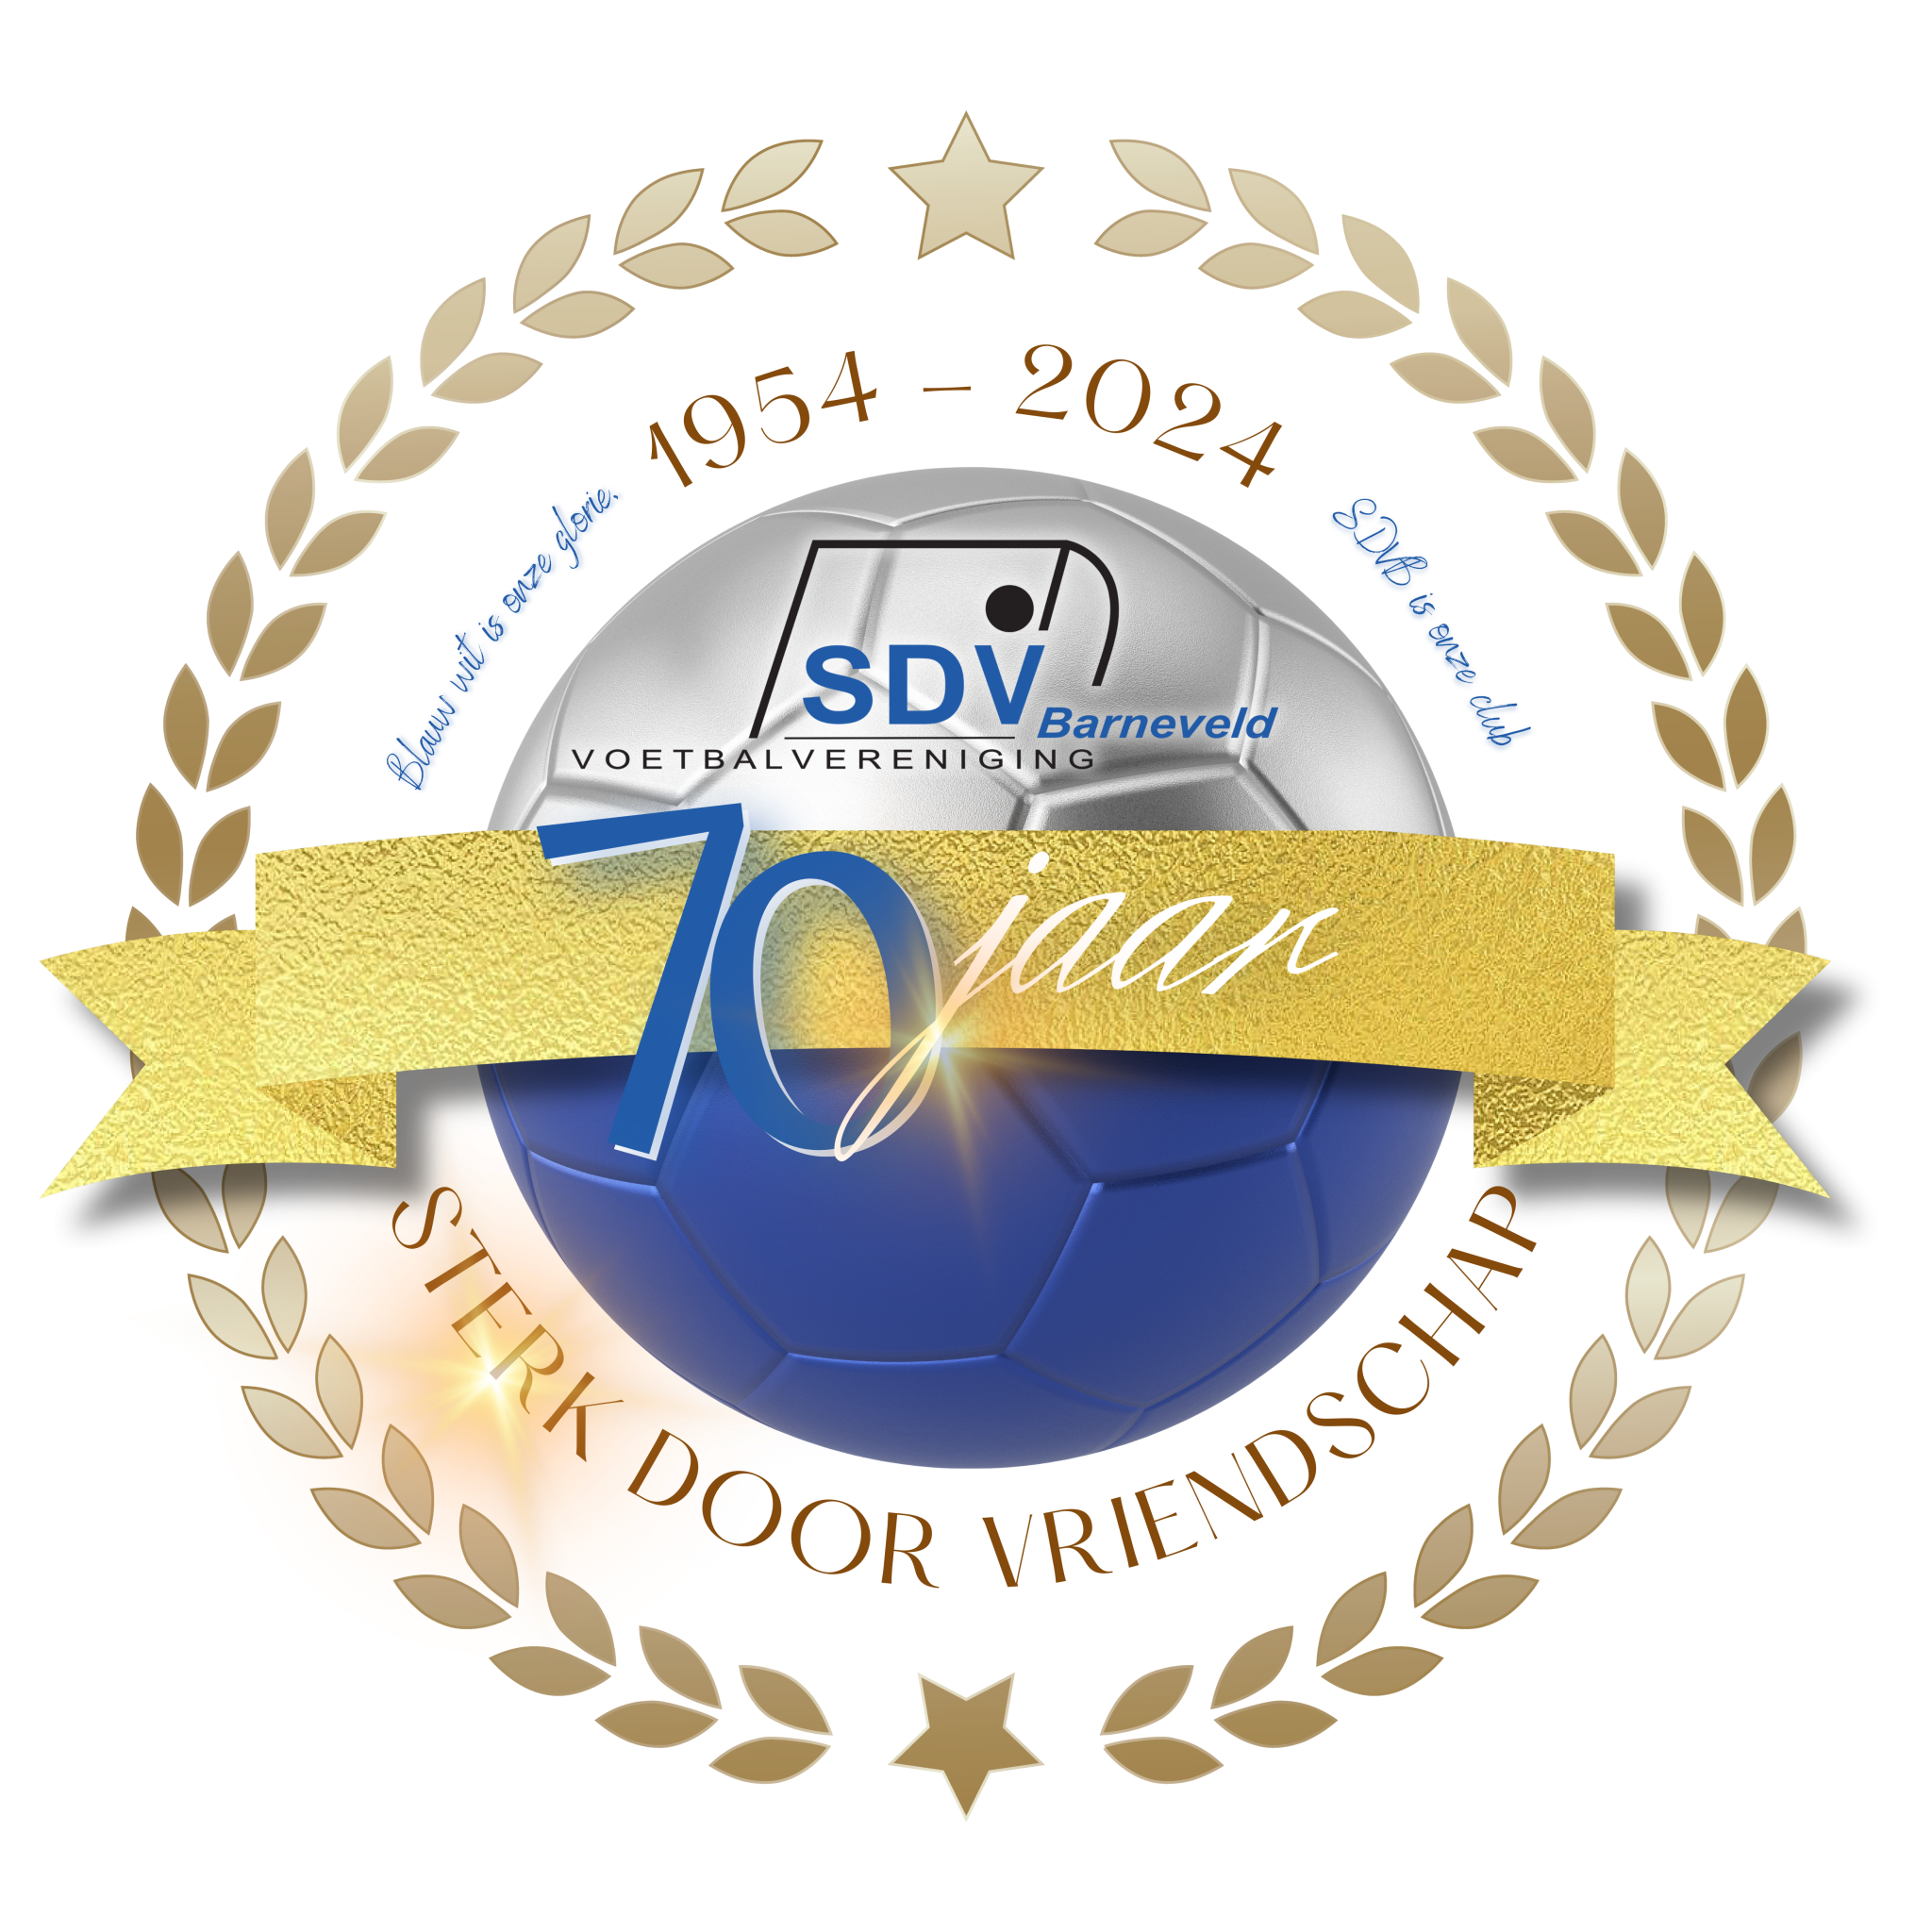 SDVB 70 jaar jubileum logo